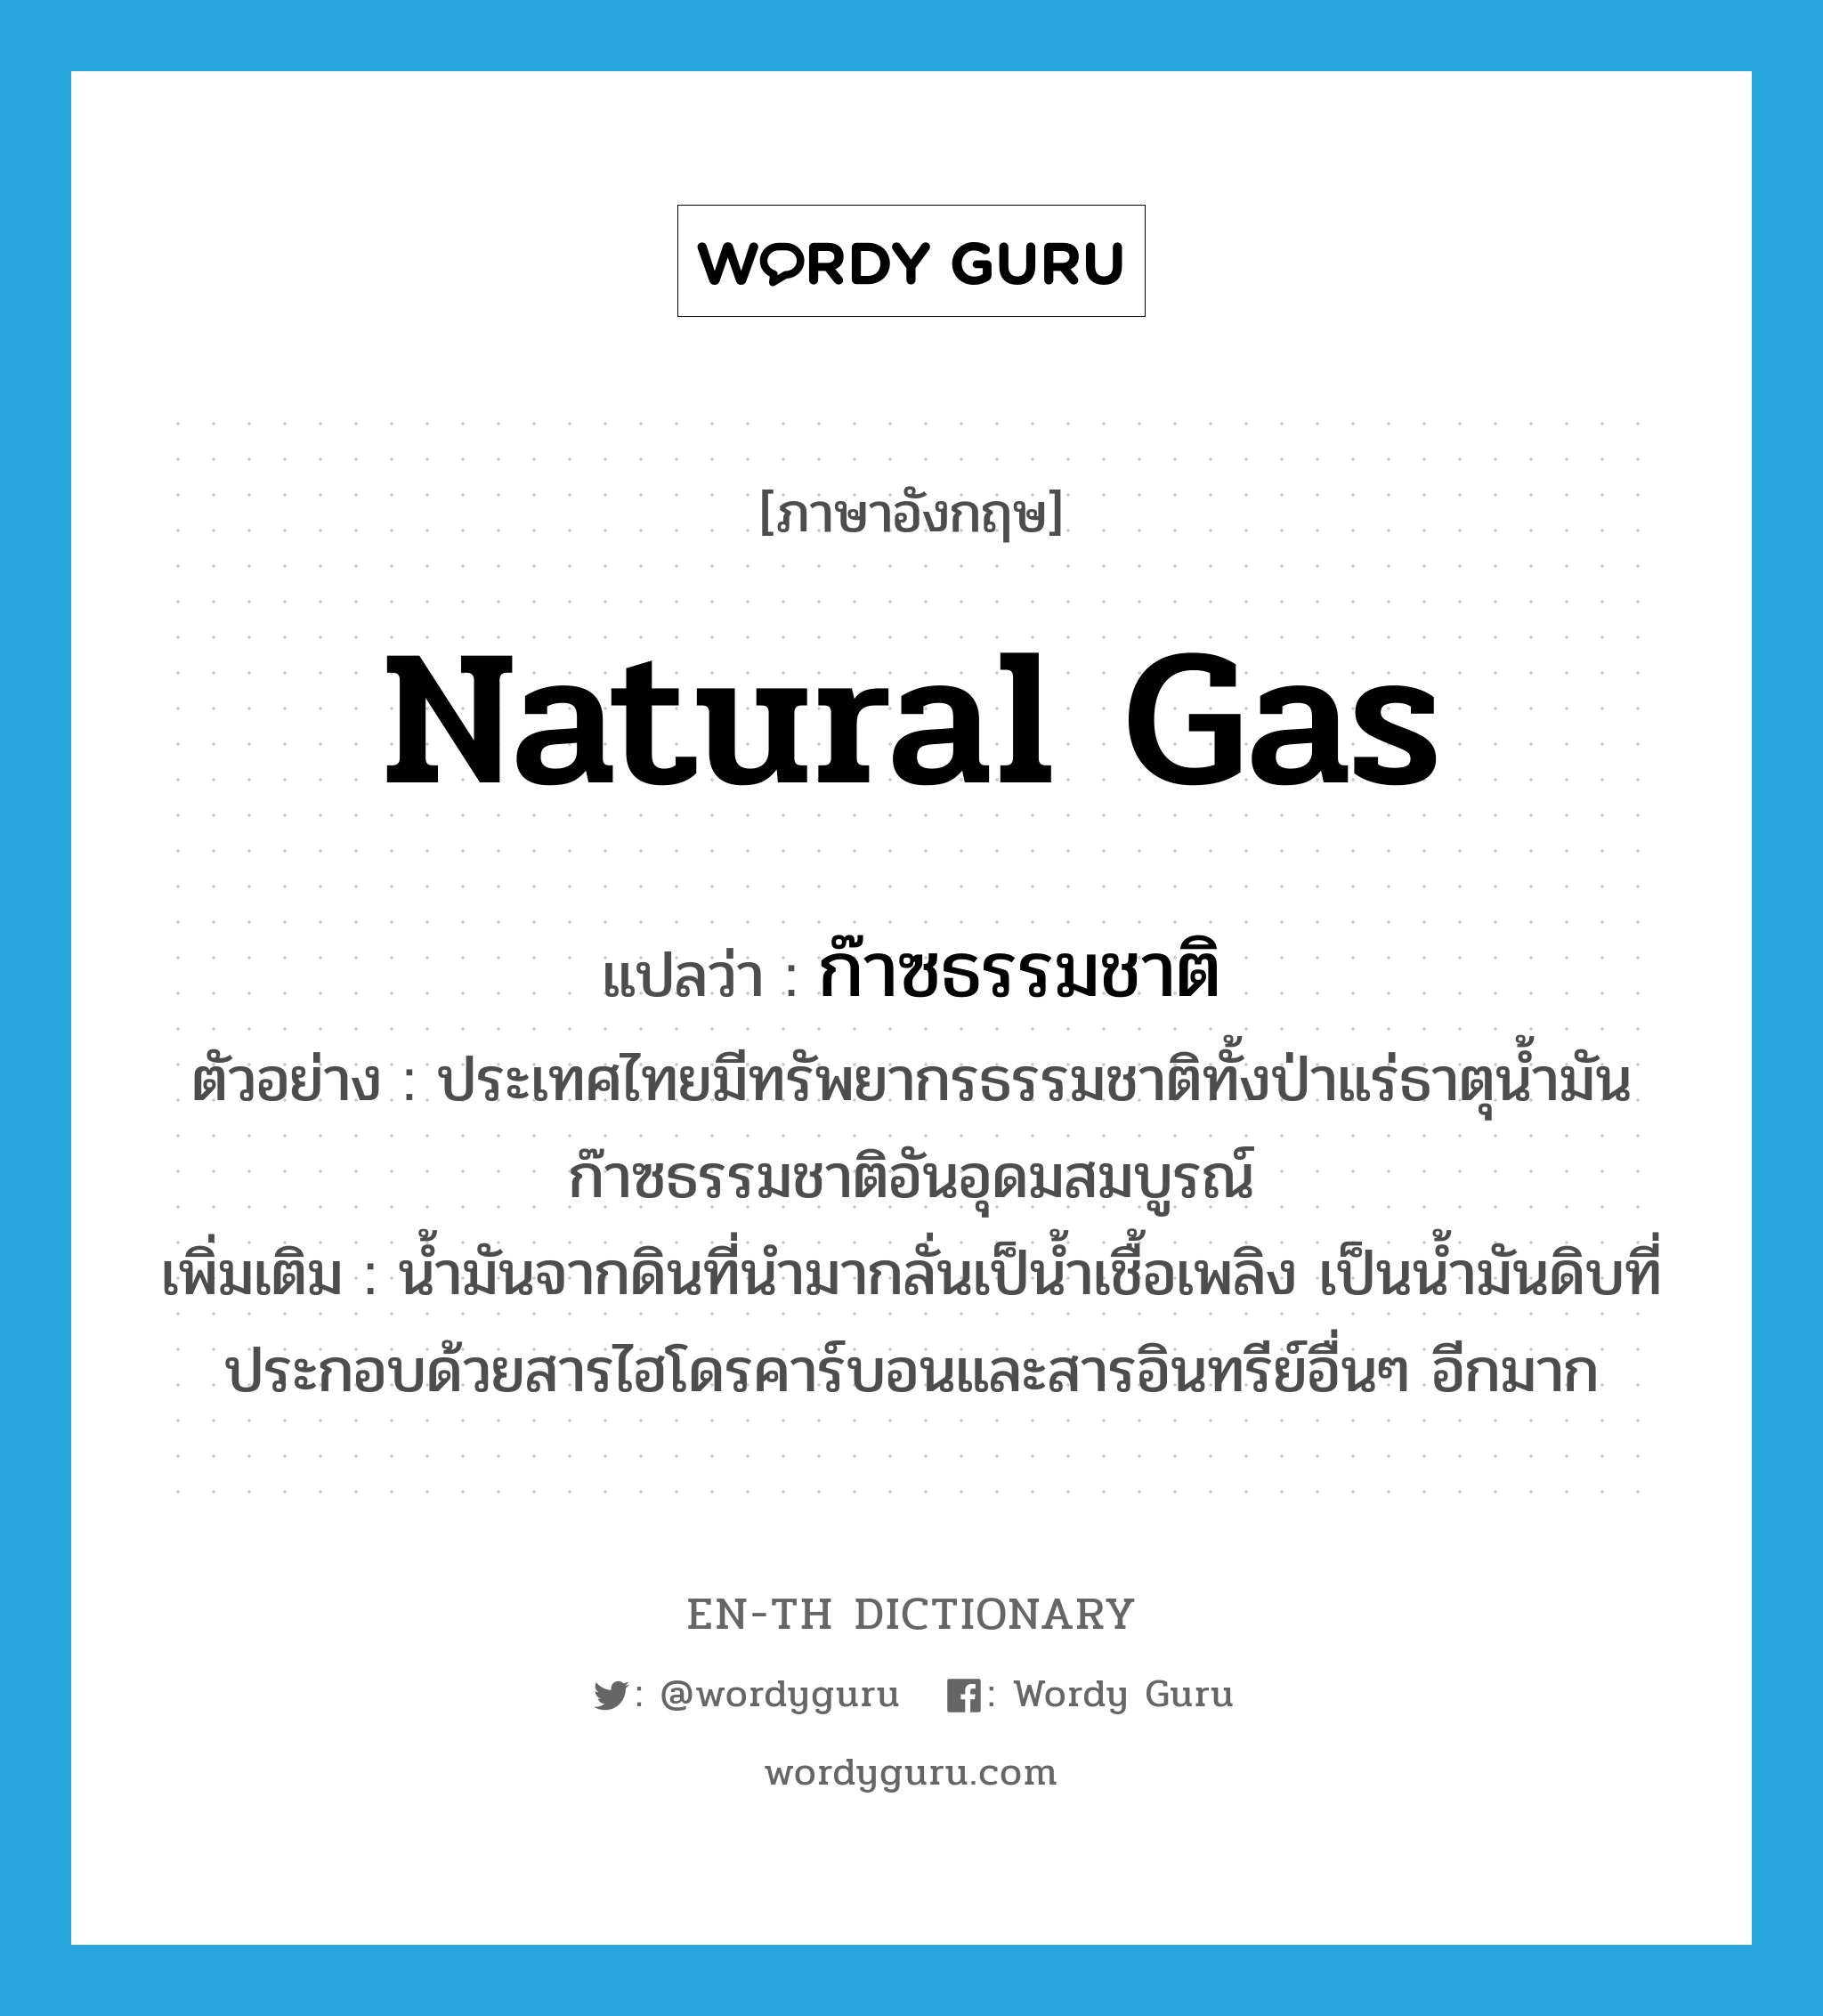 natural gas แปลว่า?, คำศัพท์ภาษาอังกฤษ natural gas แปลว่า ก๊าซธรรมชาติ ประเภท N ตัวอย่าง ประเทศไทยมีทรัพยากรธรรมชาติทั้งป่าแร่ธาตุน้ำมันก๊าซธรรมชาติอันอุดมสมบูรณ์ เพิ่มเติม น้ำมันจากดินที่นำมากลั่นเป็น้ำเชื้อเพลิง เป็นน้ำมันดิบที่ประกอบด้วยสารไฮโดรคาร์บอนและสารอินทรีย์อื่นๆ อีกมาก หมวด N